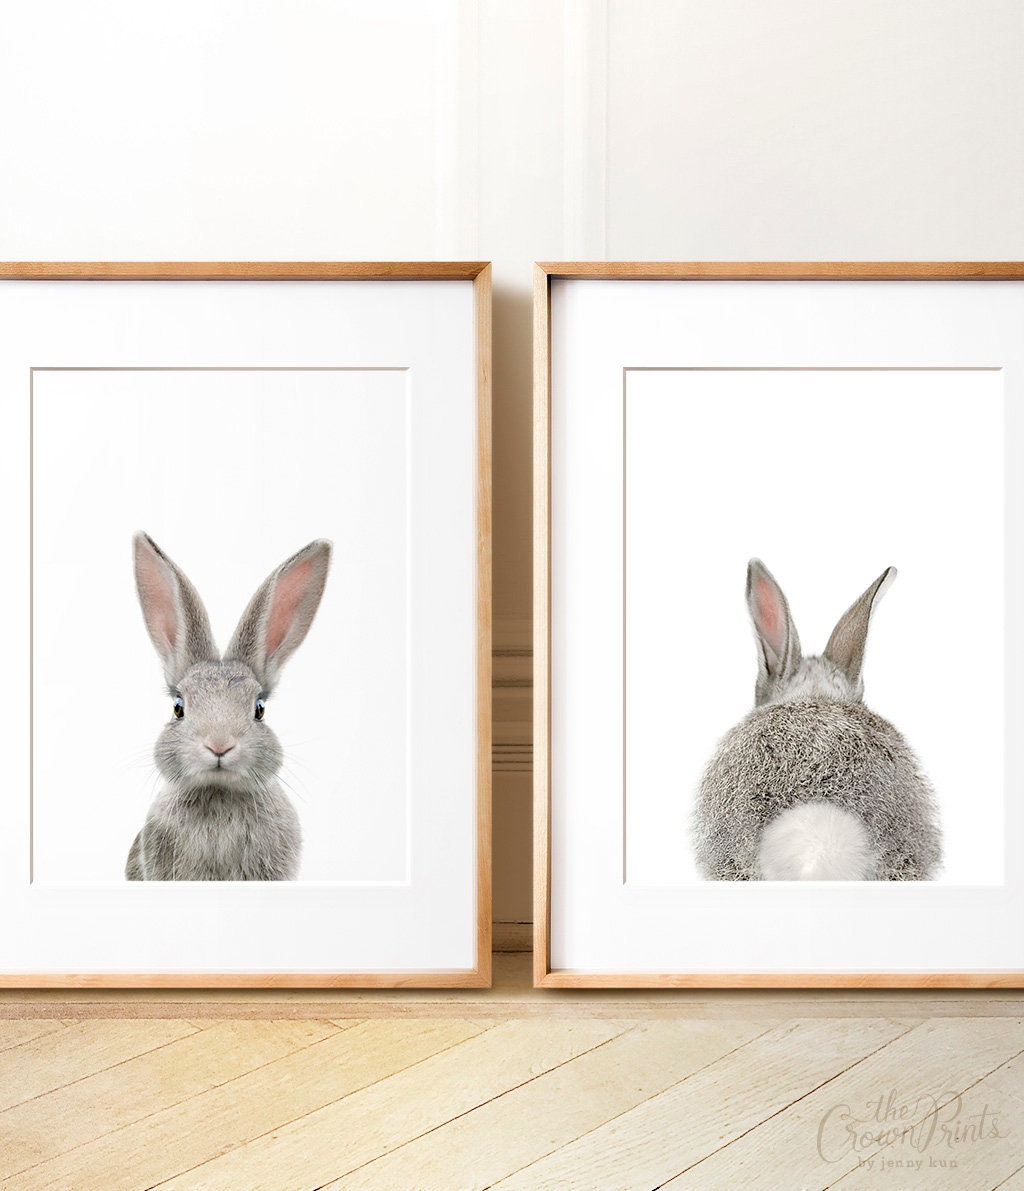 Animal Art Printable Bunnies Nursery Printables Art Watercolor Bunny Print Kids wall Art Rabbits,Black and White Wall Decor Rabbit